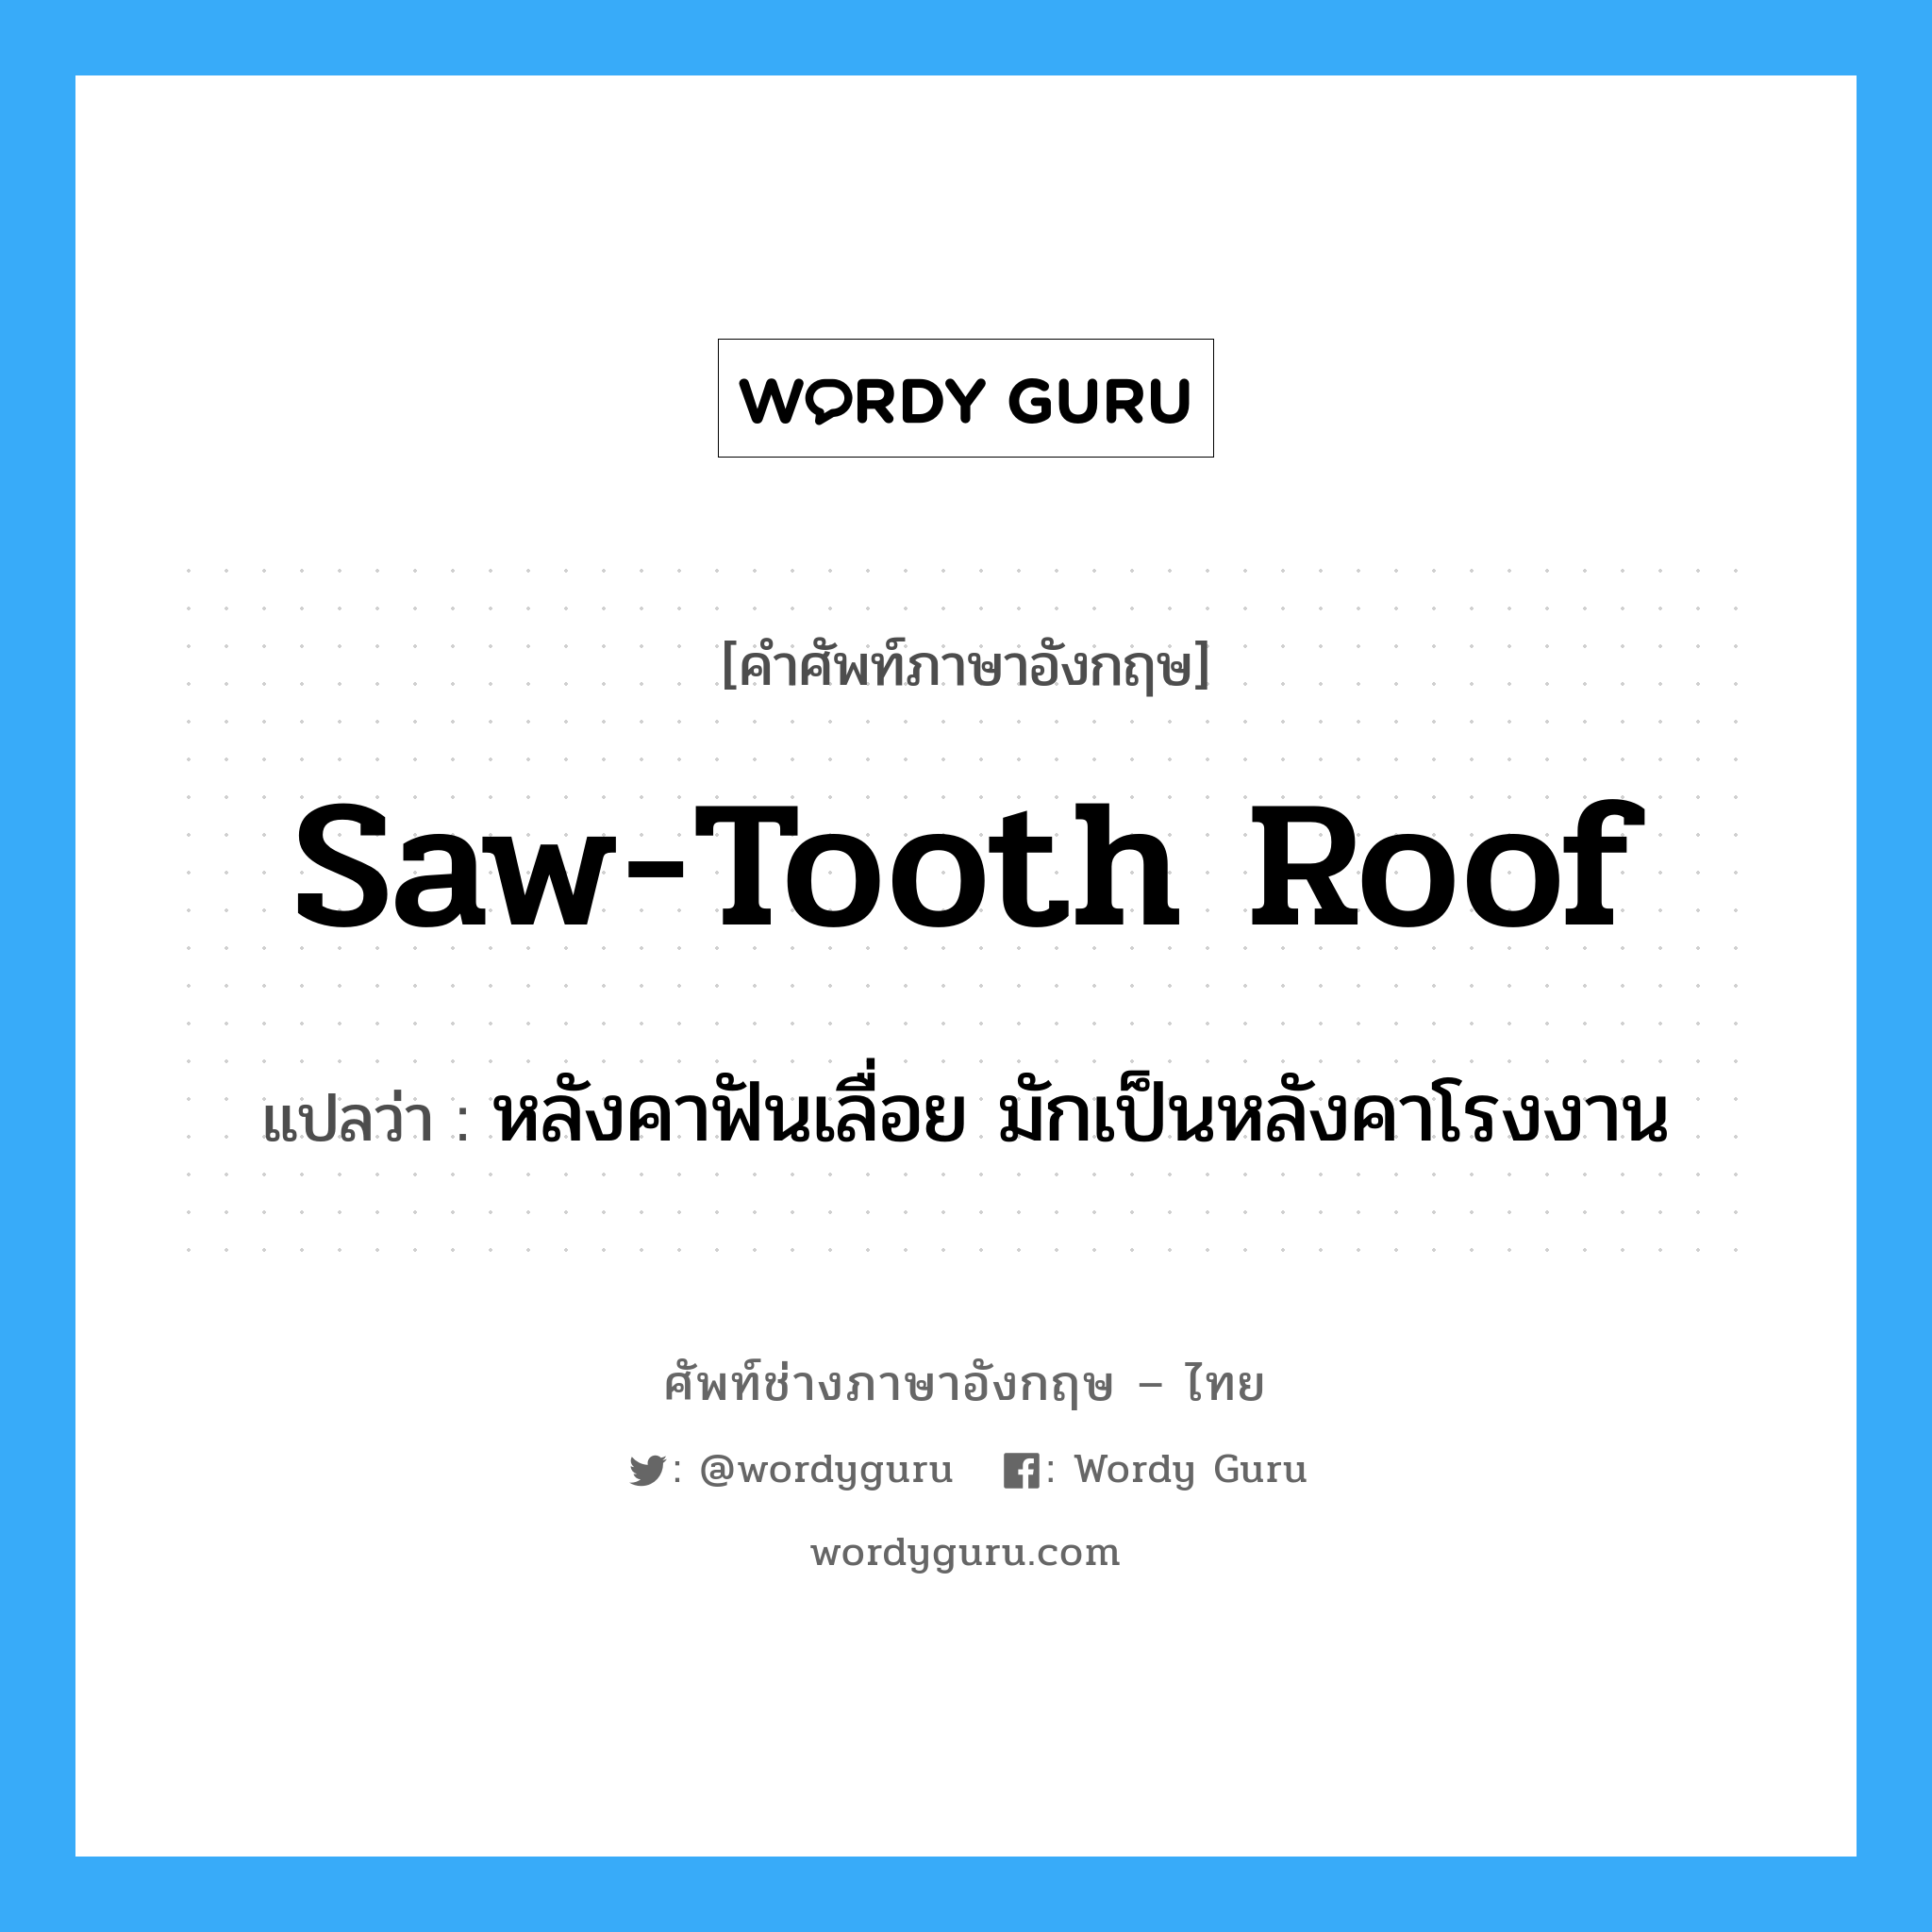 saw-tooth roof แปลว่า?, คำศัพท์ช่างภาษาอังกฤษ - ไทย saw-tooth roof คำศัพท์ภาษาอังกฤษ saw-tooth roof แปลว่า หลังคาฟันเลื่อย มักเป็นหลังคาโรงงาน